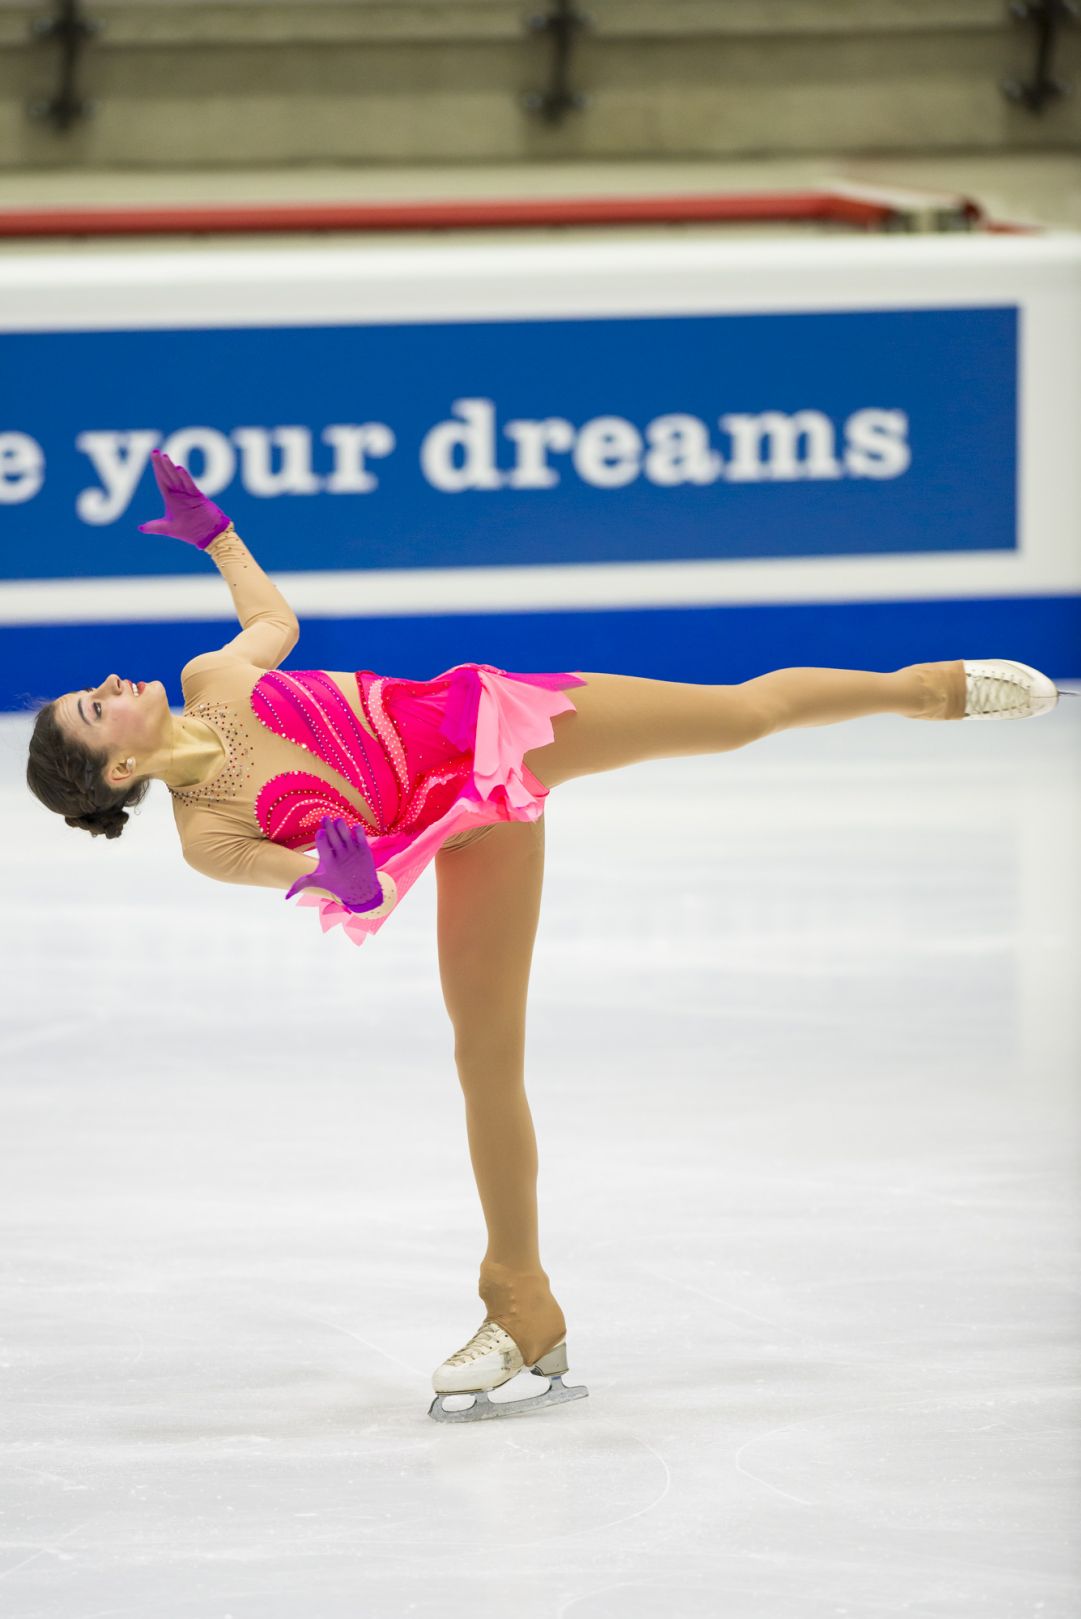 Guia Tagliepietra quattordicesima nel corto dei Mondiali juniores dominato dalla russa Evgenia Medvedeva